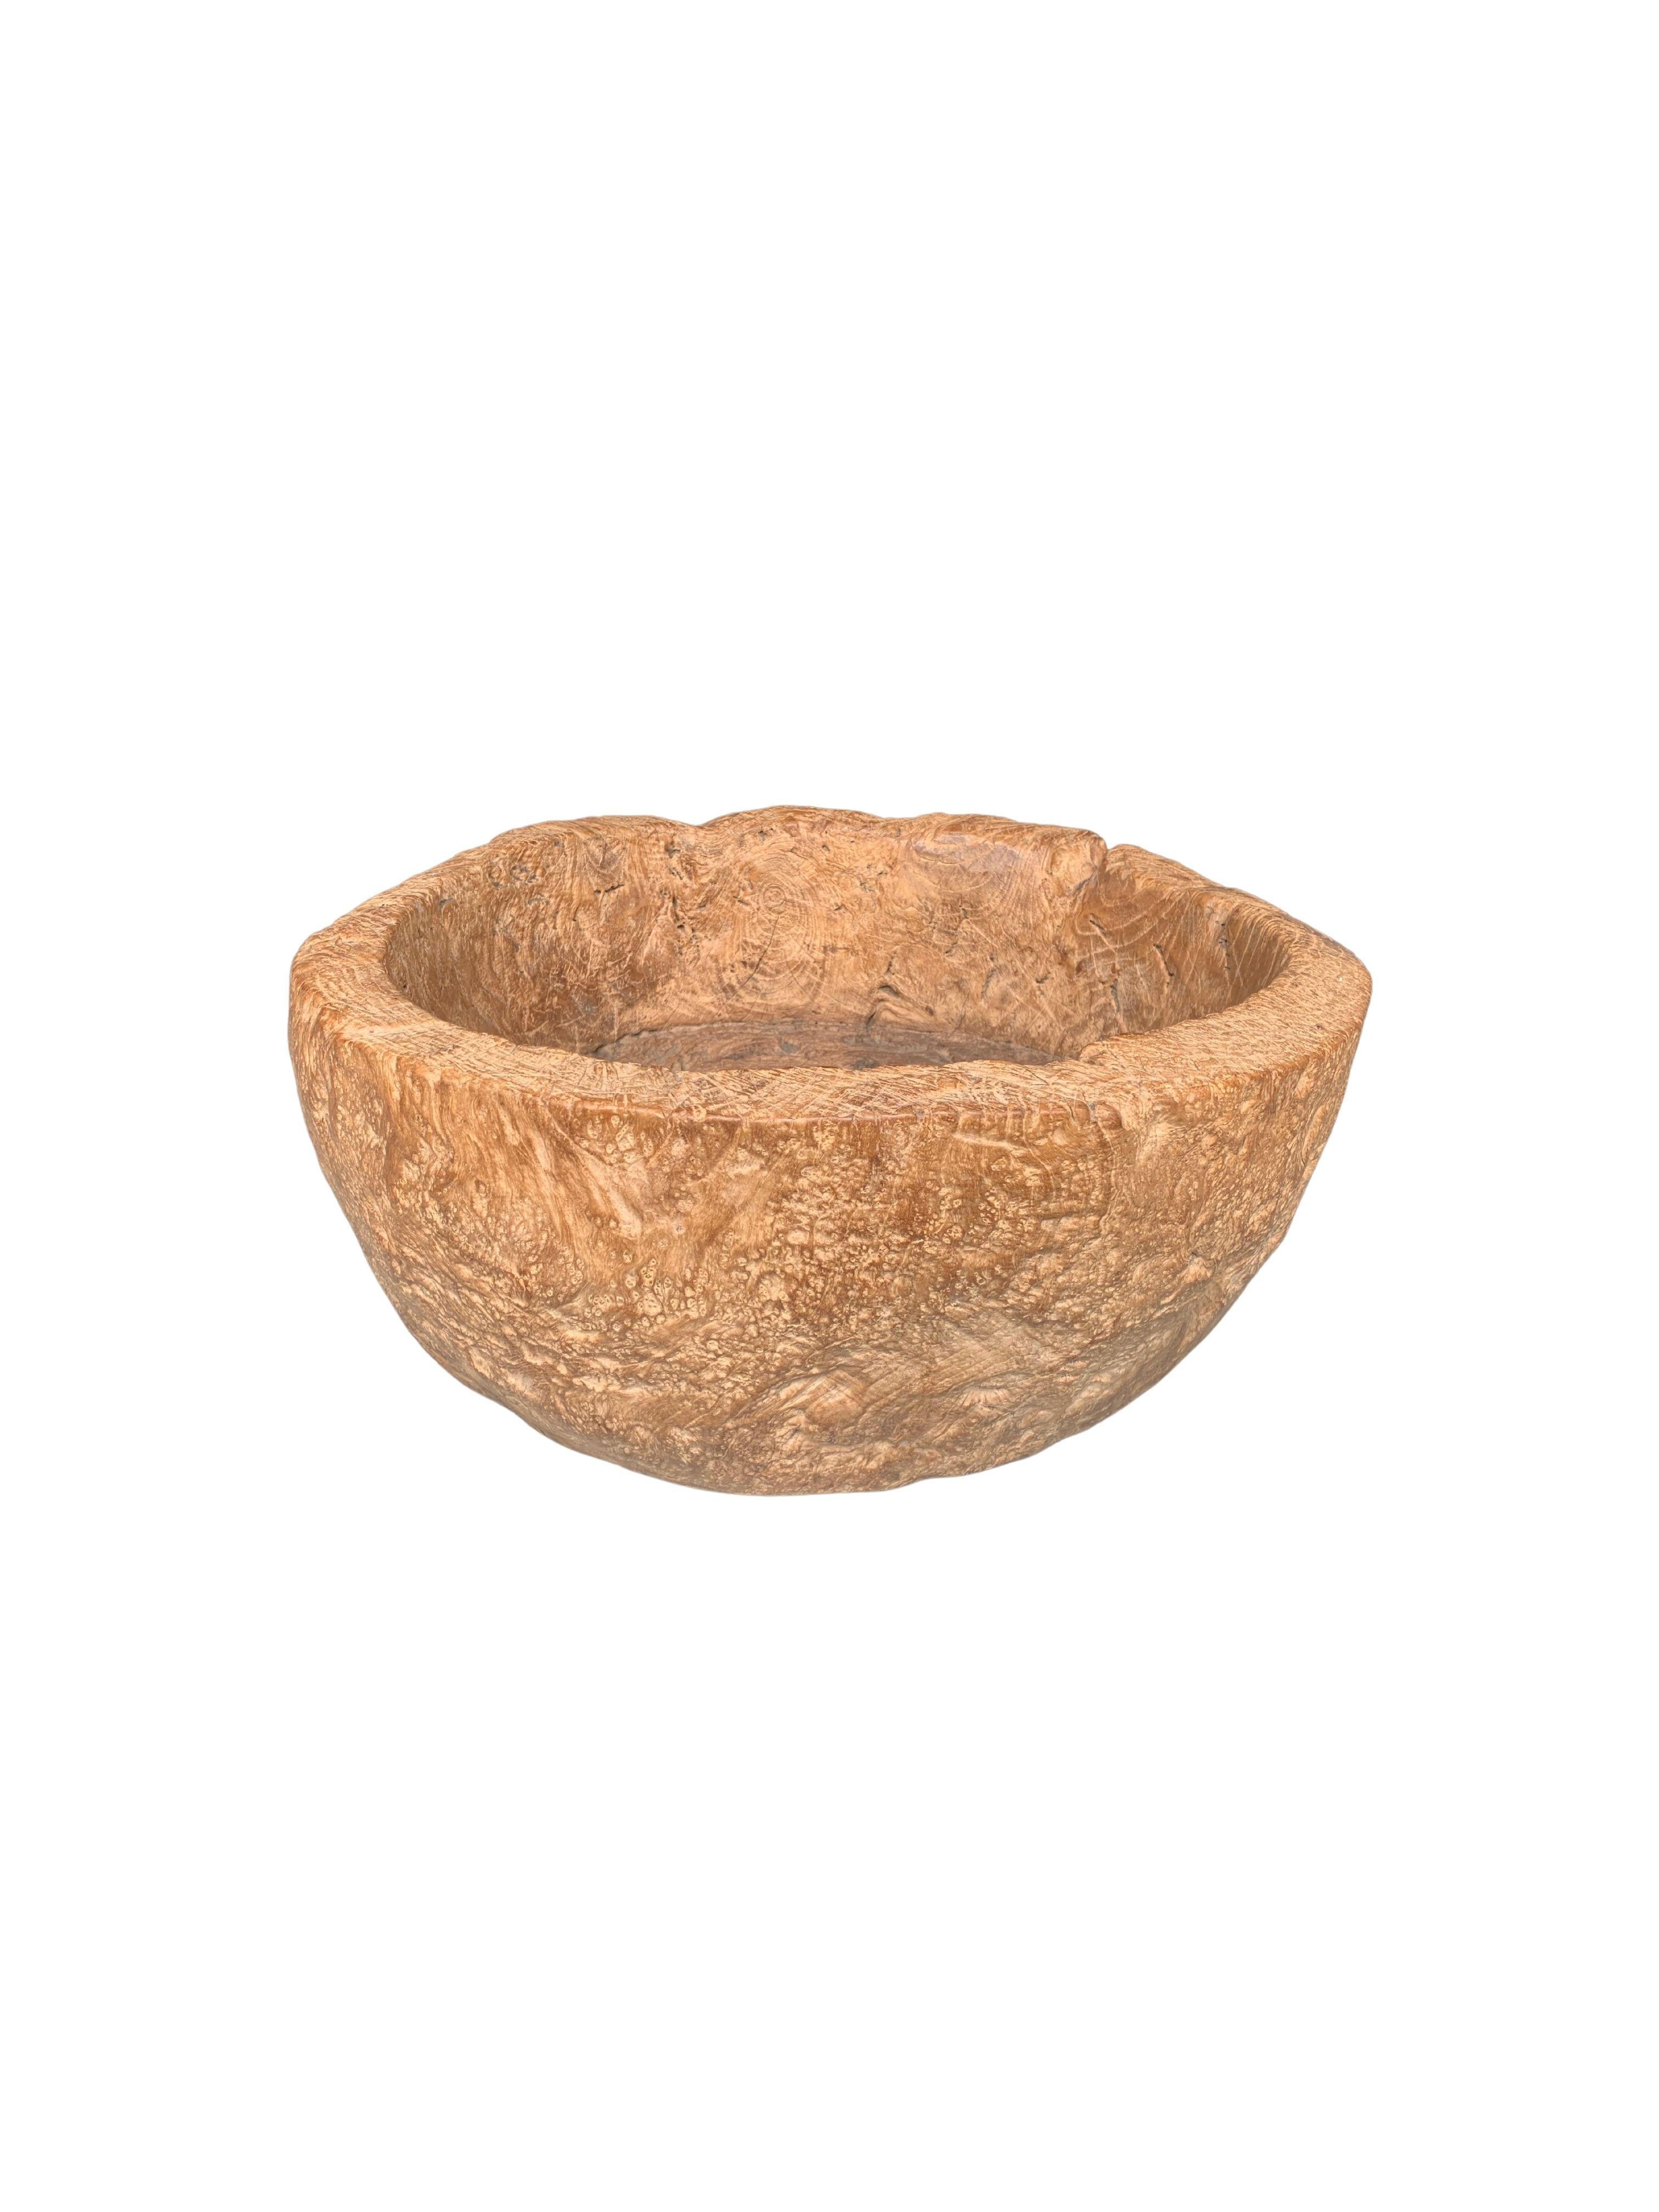 Un bol en teck massif fabriqué sur l'île de Java à partir d'une tranche de bois de ronce. La cuvette présente une finition polie et est très solide avec un bassin et des parois pensés. Le bol a été découpé dans une dalle de bois beaucoup plus grande